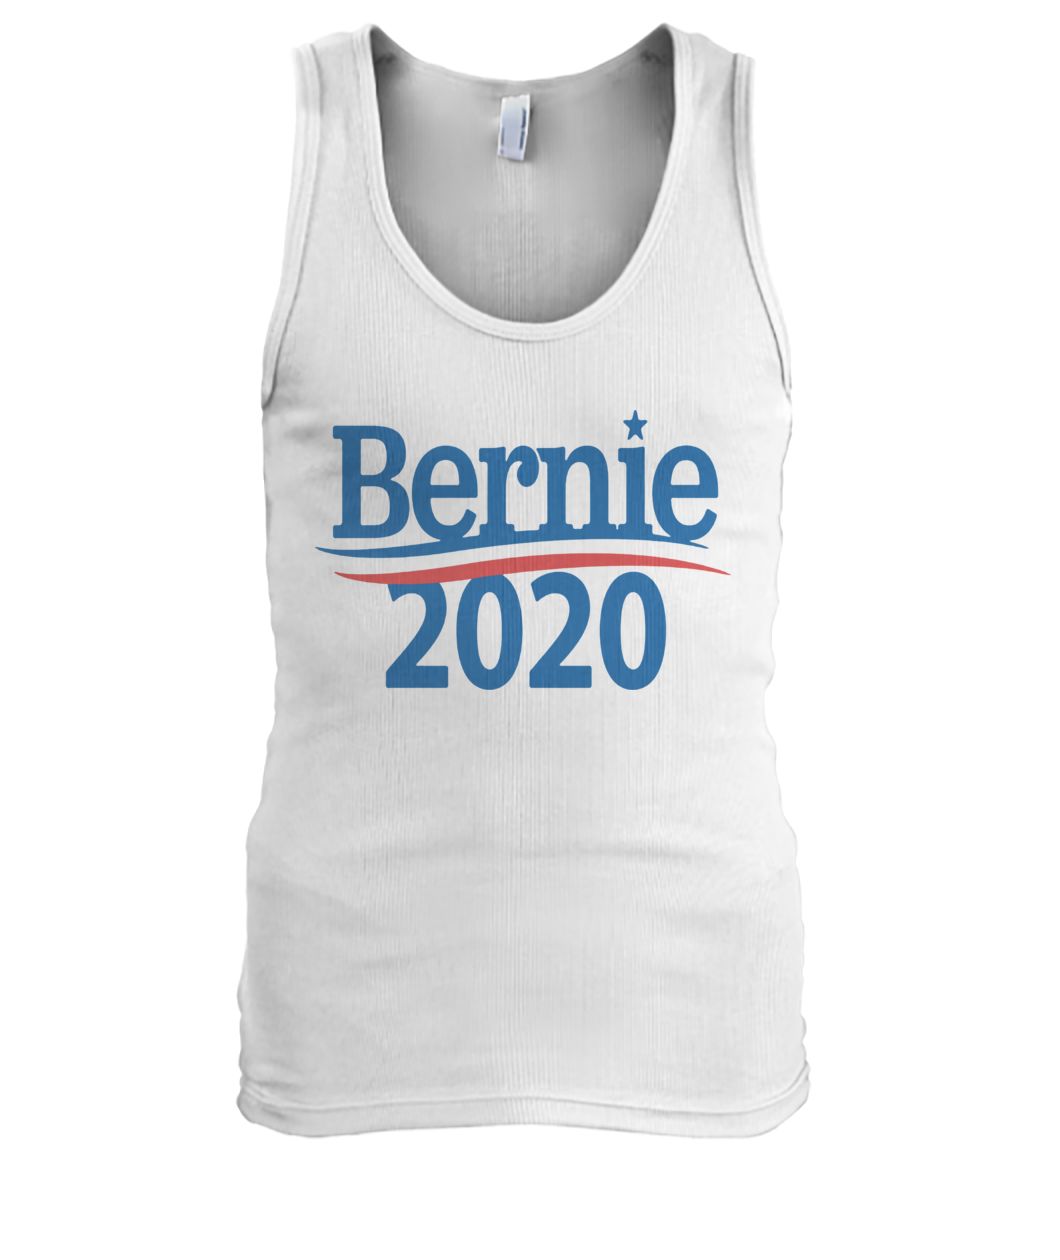 Bernie sanders for president in 2020 men's tank top